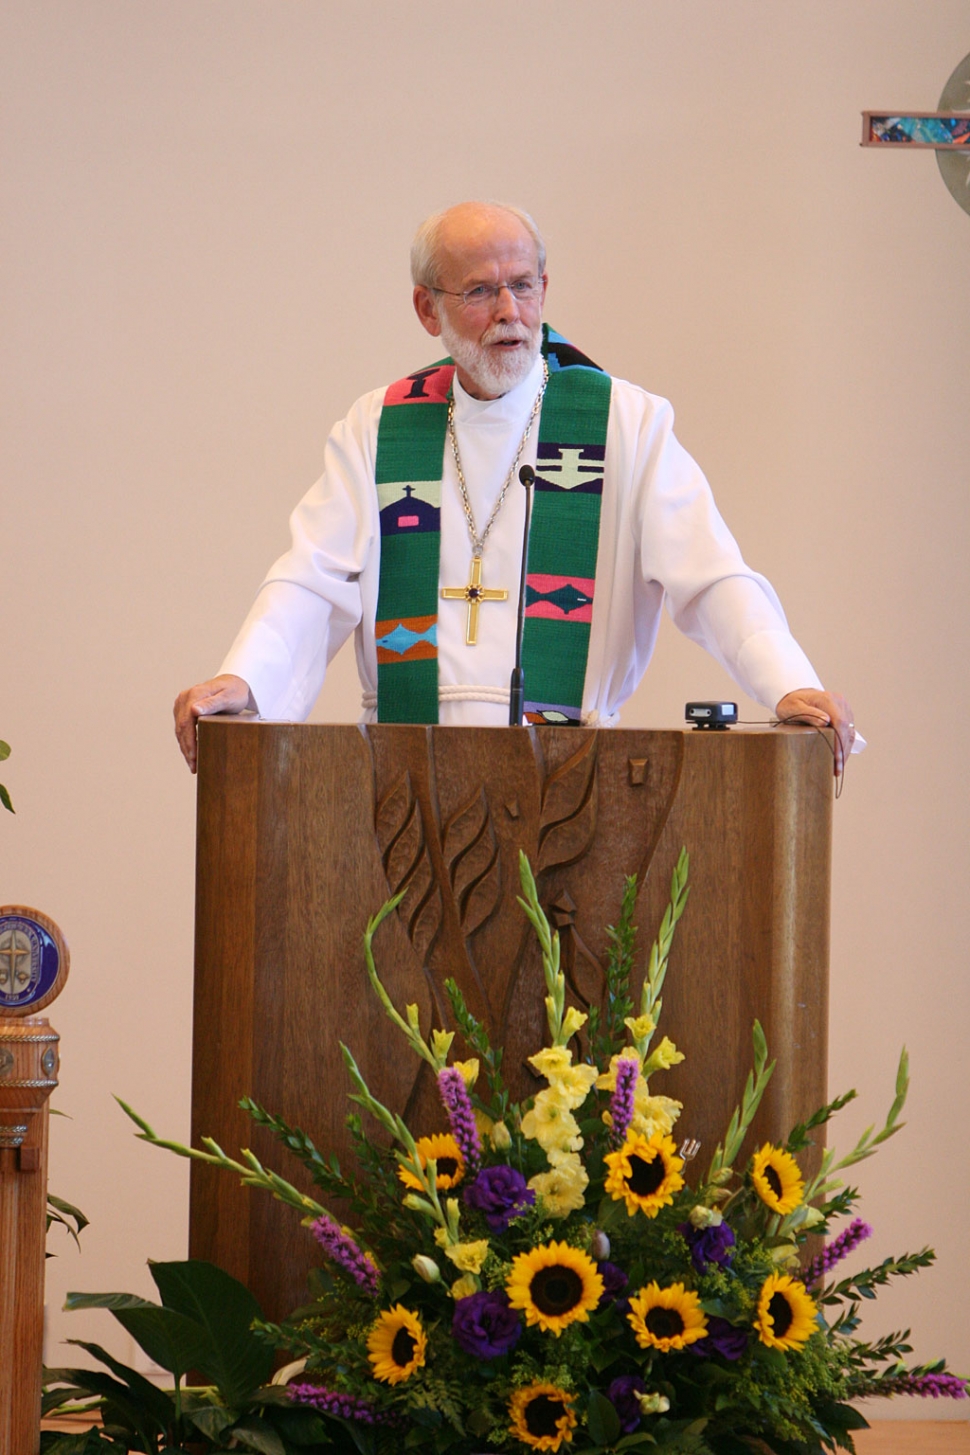 Rev. Mark Hanson